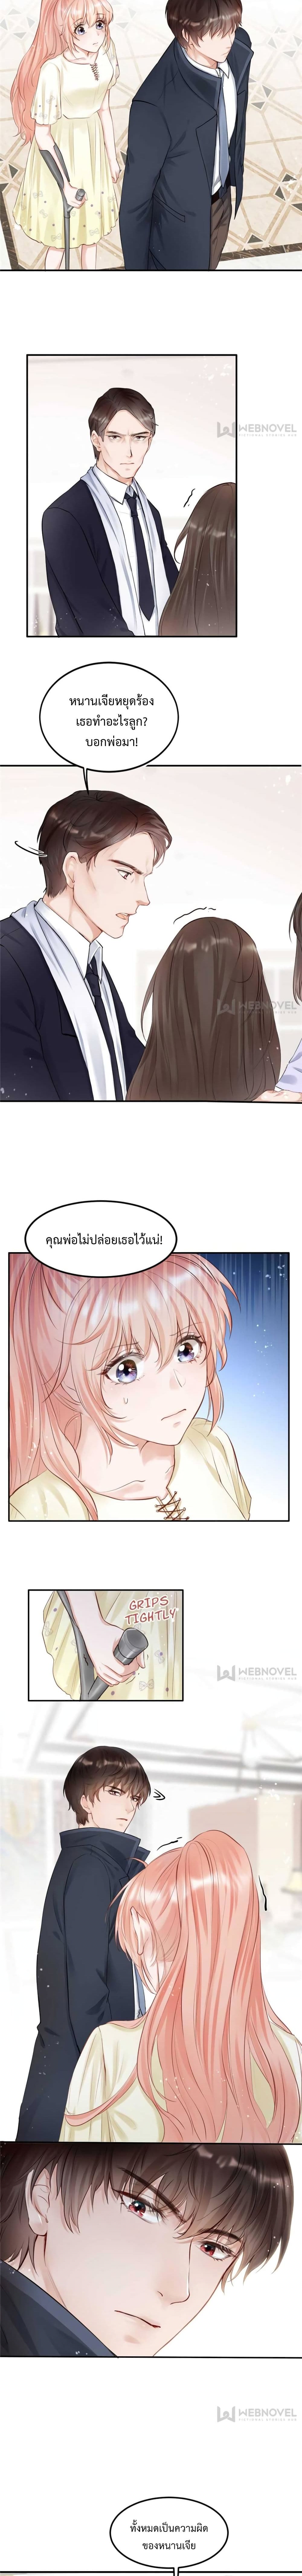 Hello Sweetie 18 แปลไทย